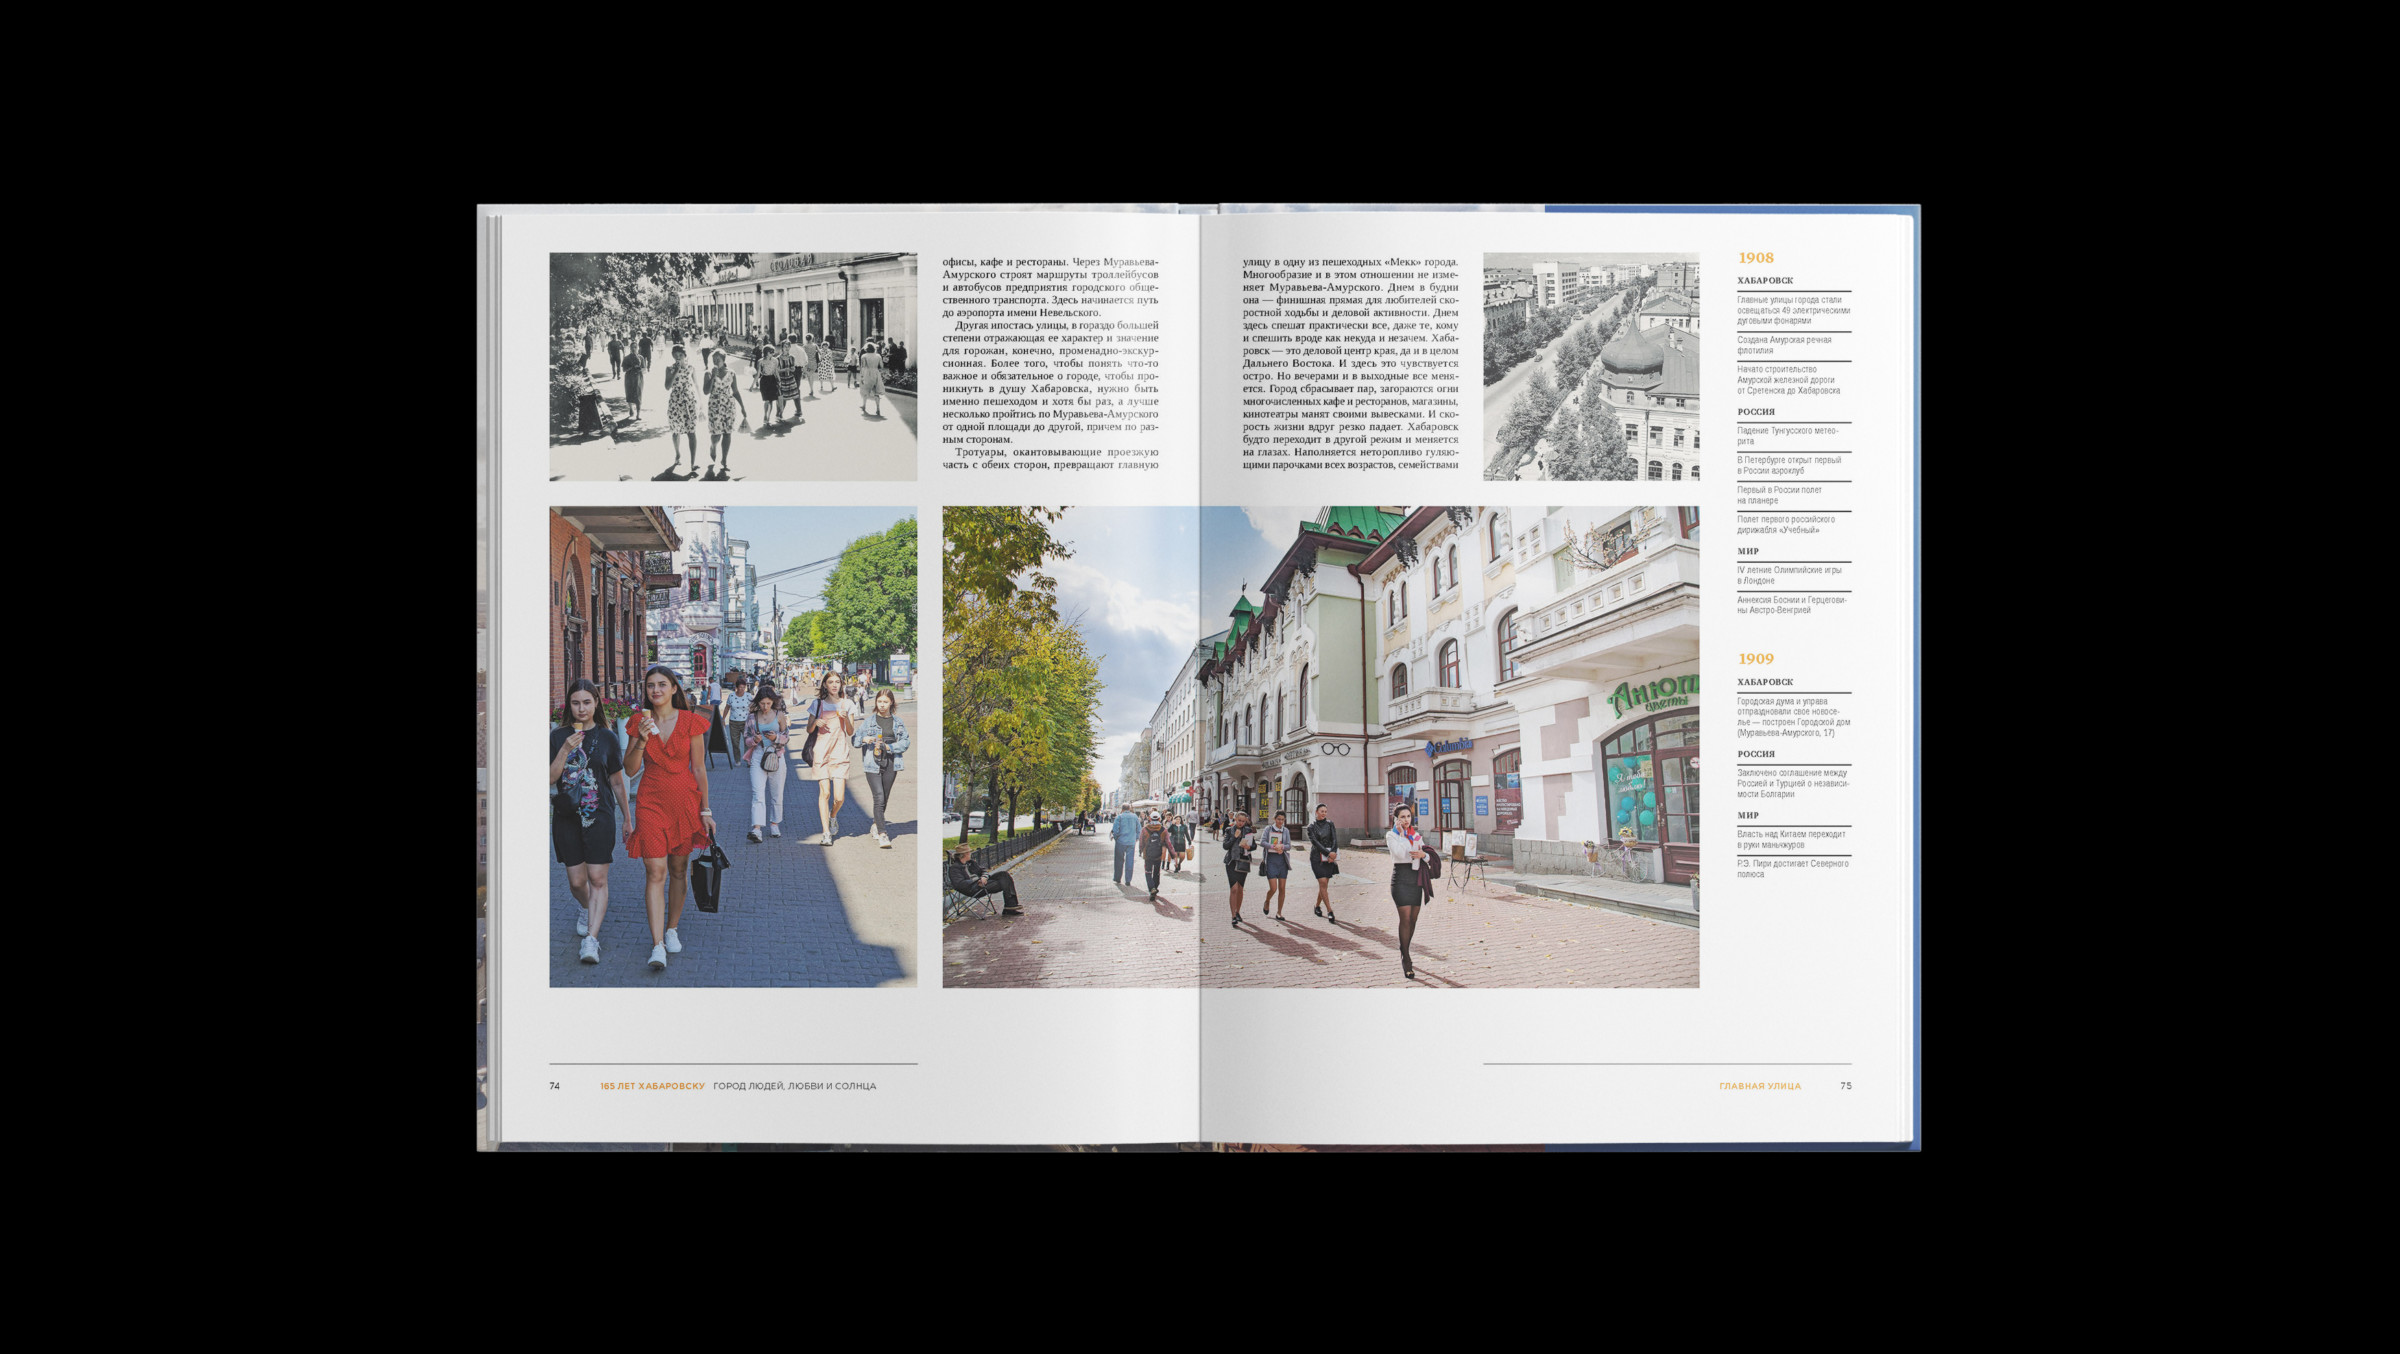 Интересный макет книги, оформили дизайн книги так, чтобы можно было сравнить фото старого и нового города, сделали дизайн и верстку книги к юбилею Хабаровска